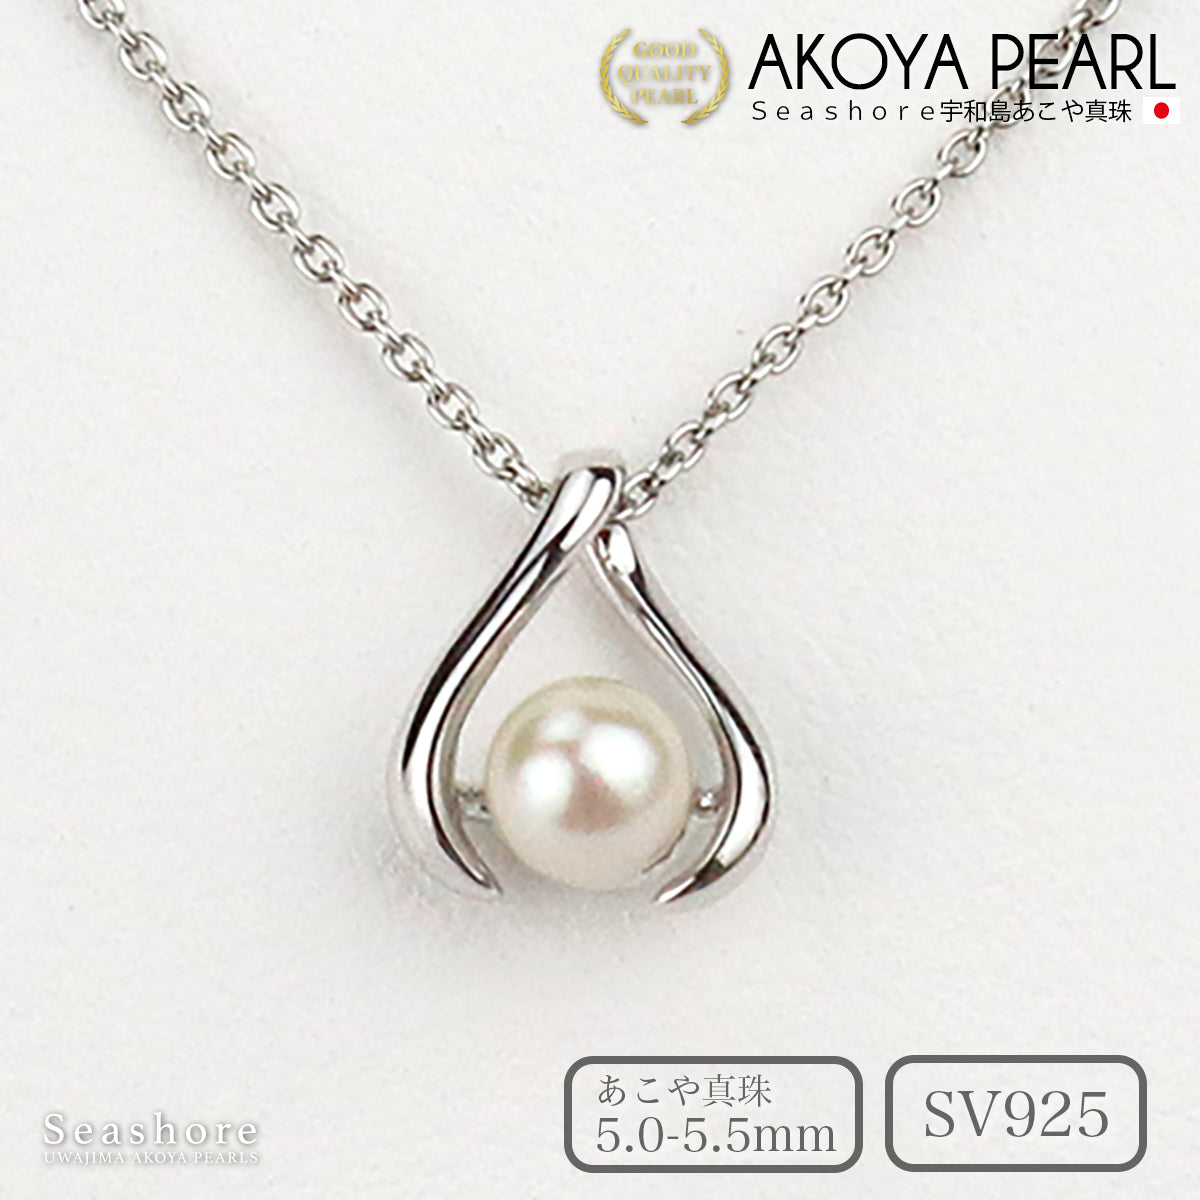 真珠 一粒 ネックレス レディース ペンダント トライアングル ホワイト 5.0-5.5mm SV925 あこや真珠 アコヤ パール ベビーパール (3620)